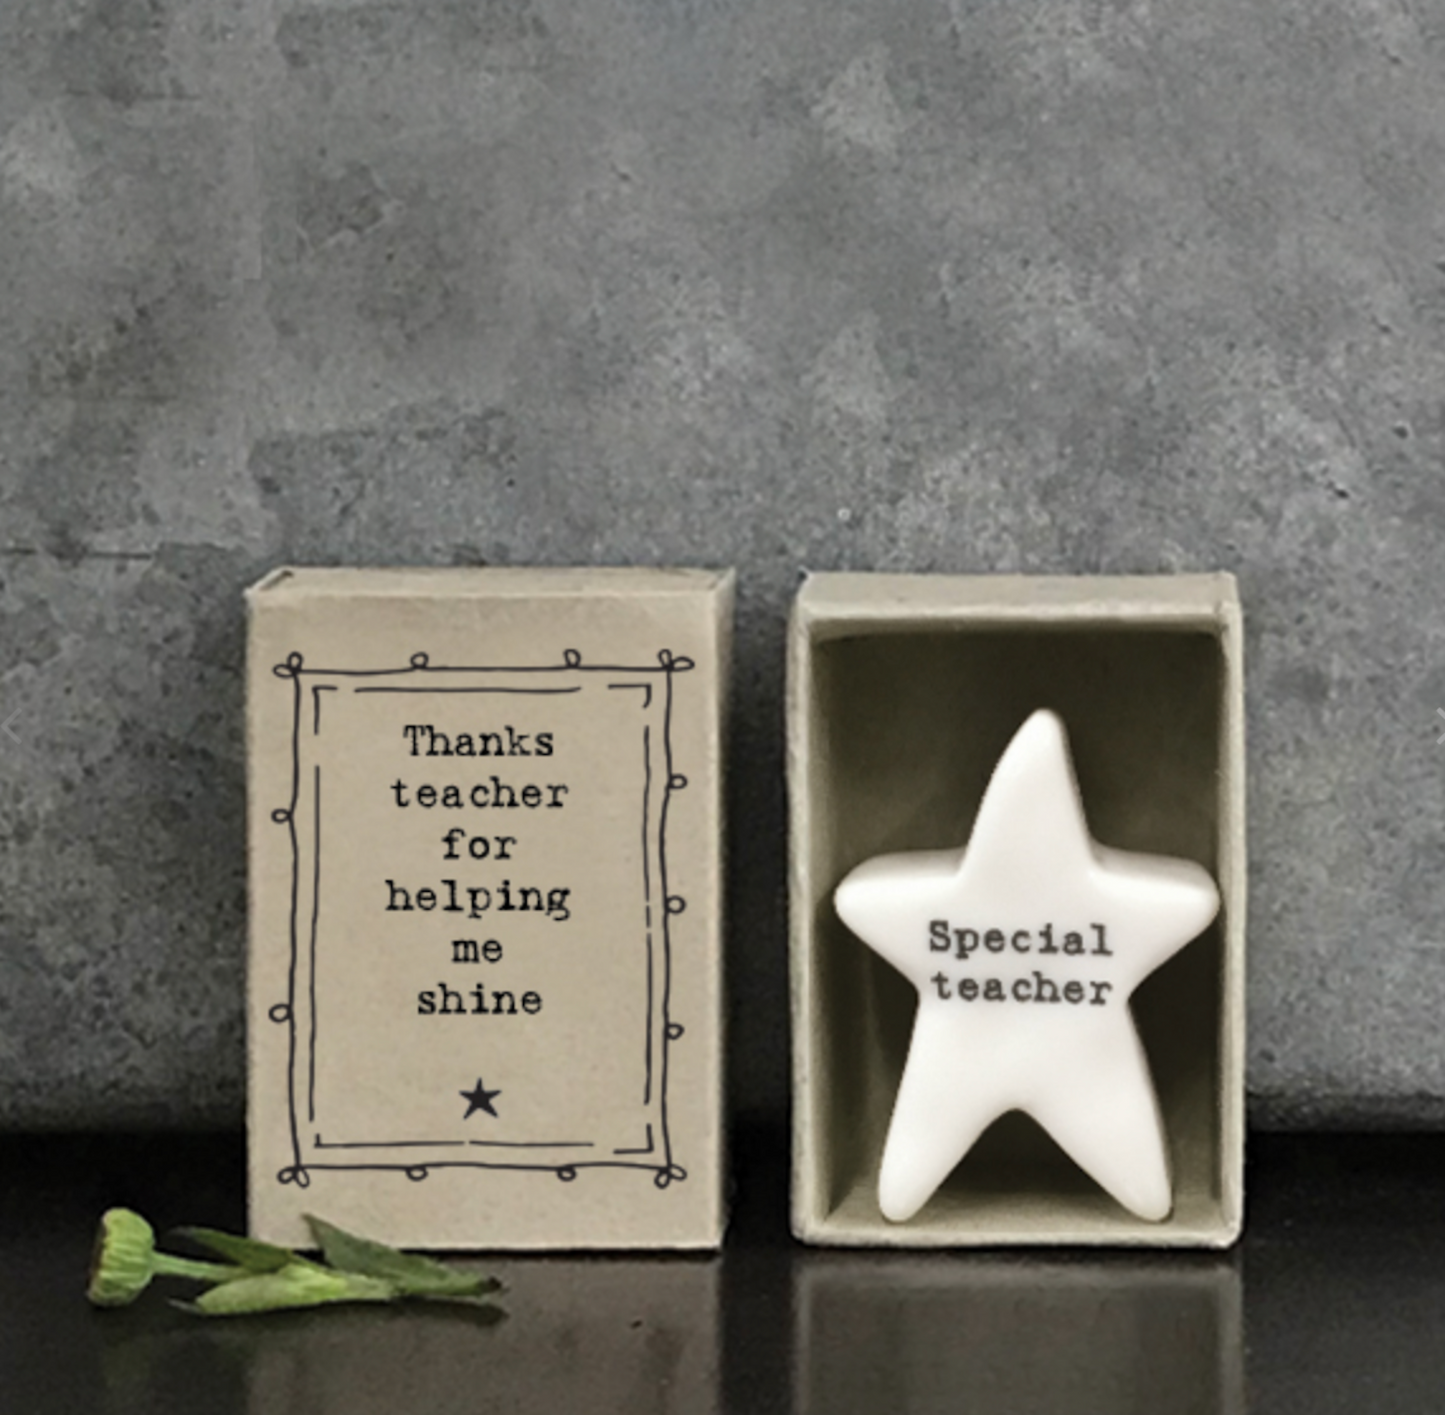 Matchbox Teachers gift Porcelain Star